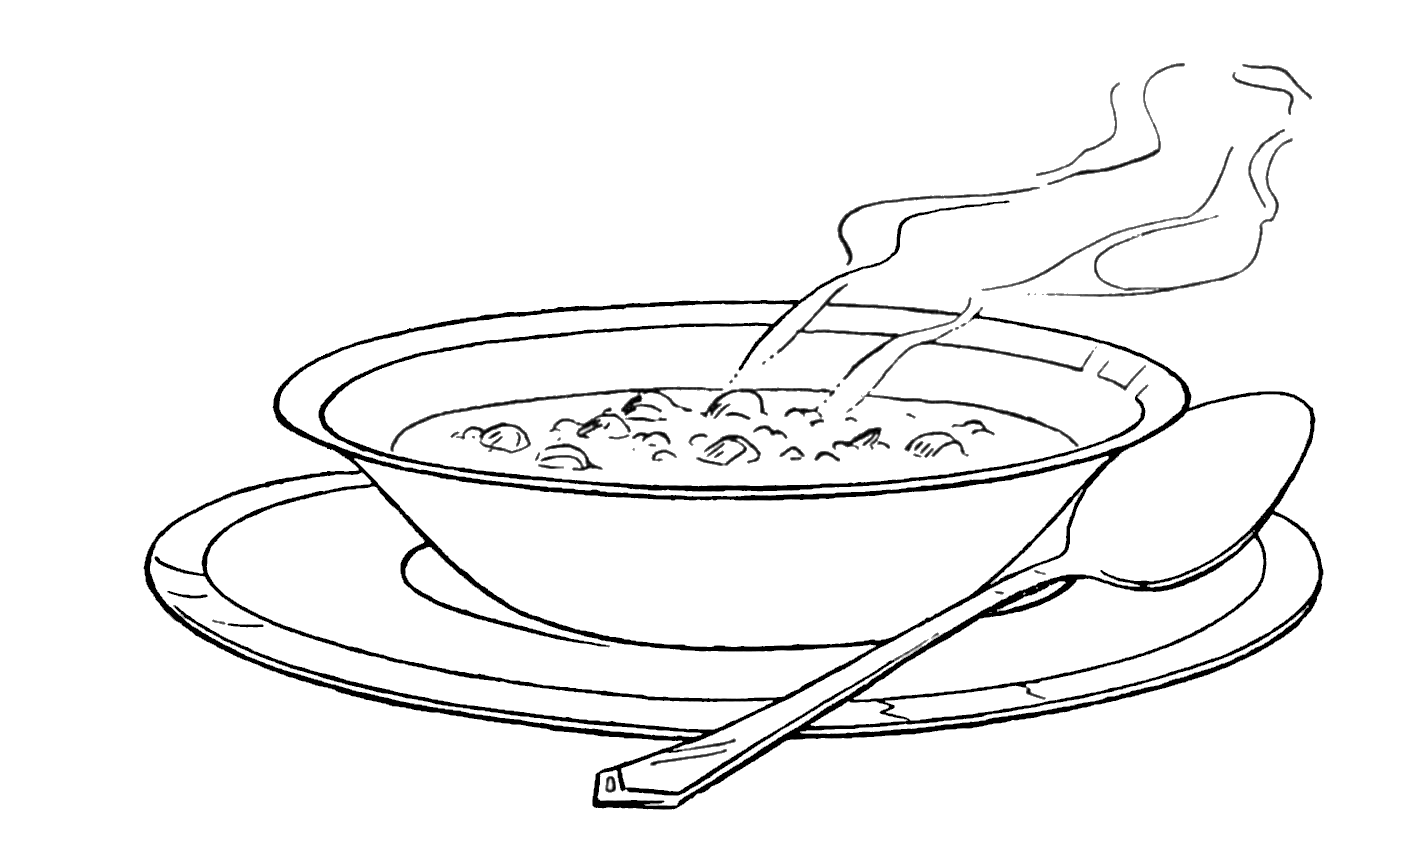 hot clipart soup